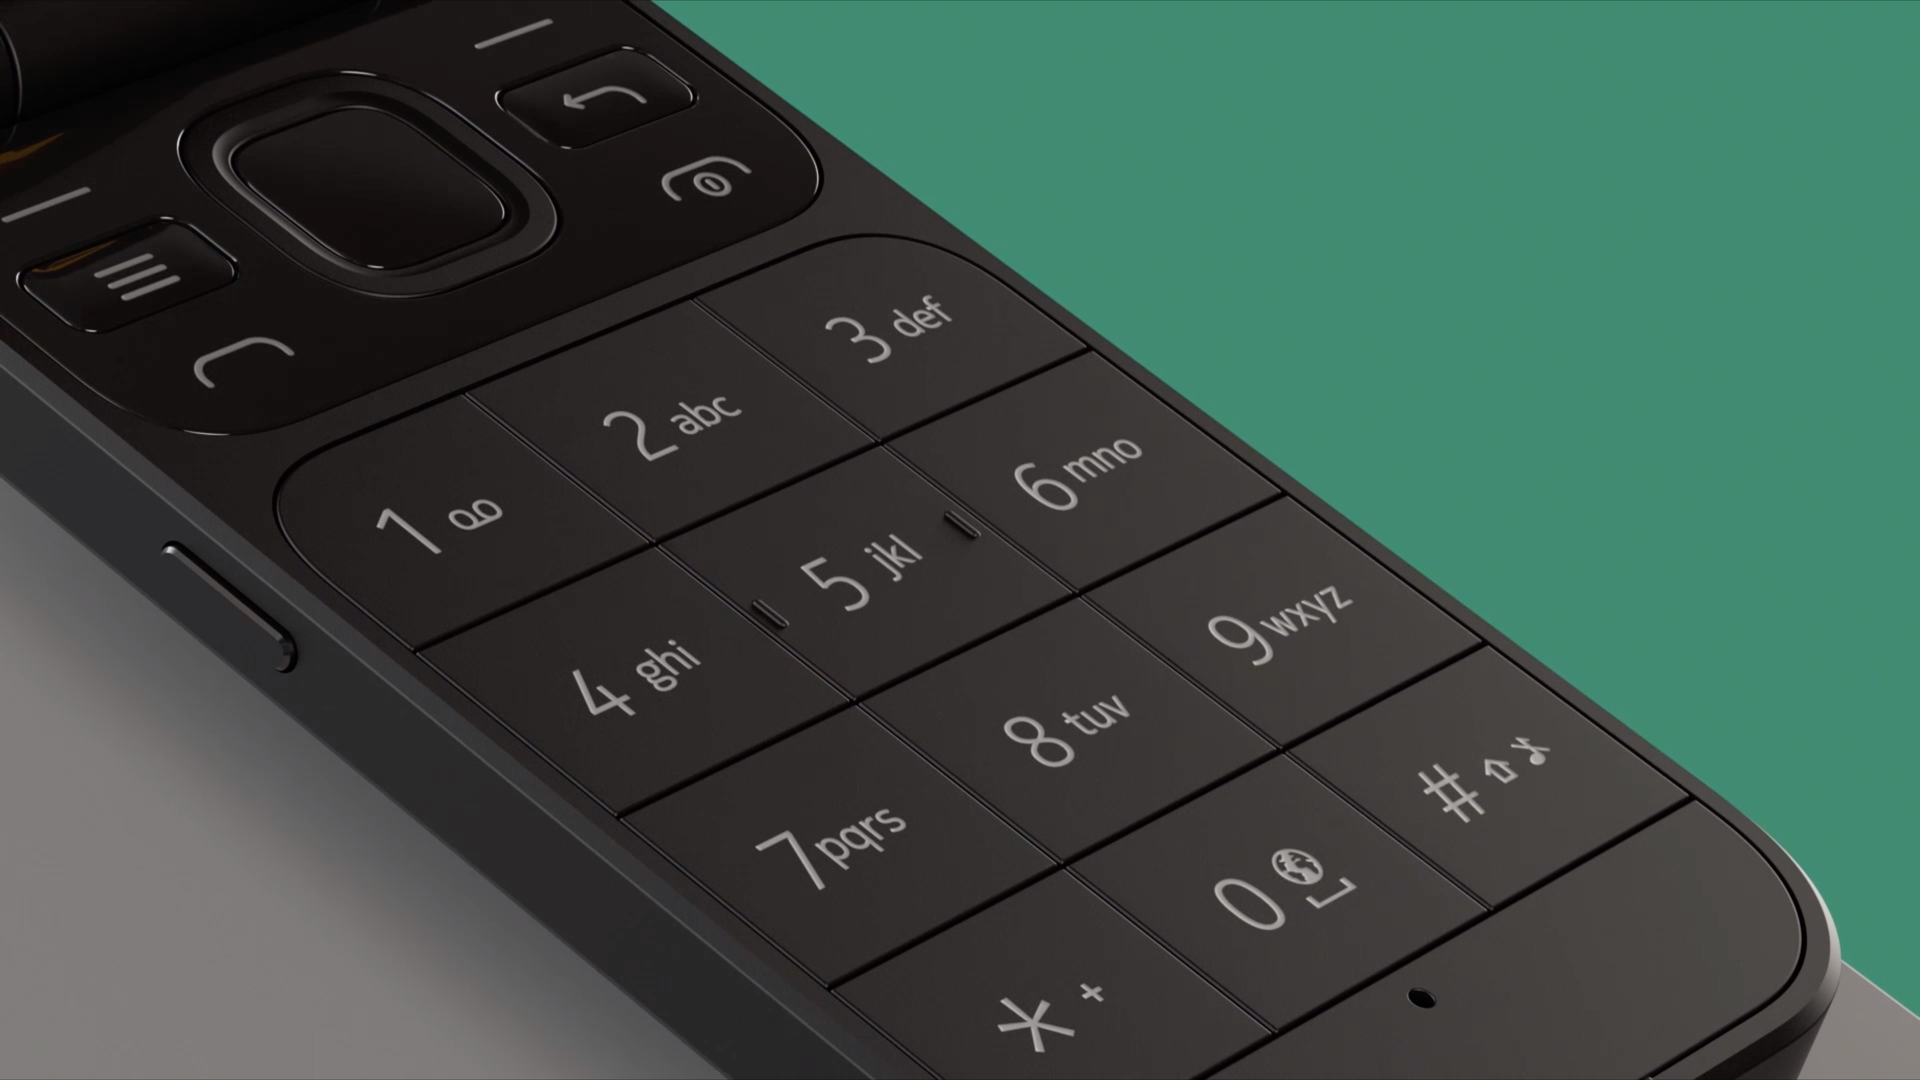 Original Nokia 2720 Flip Phone –